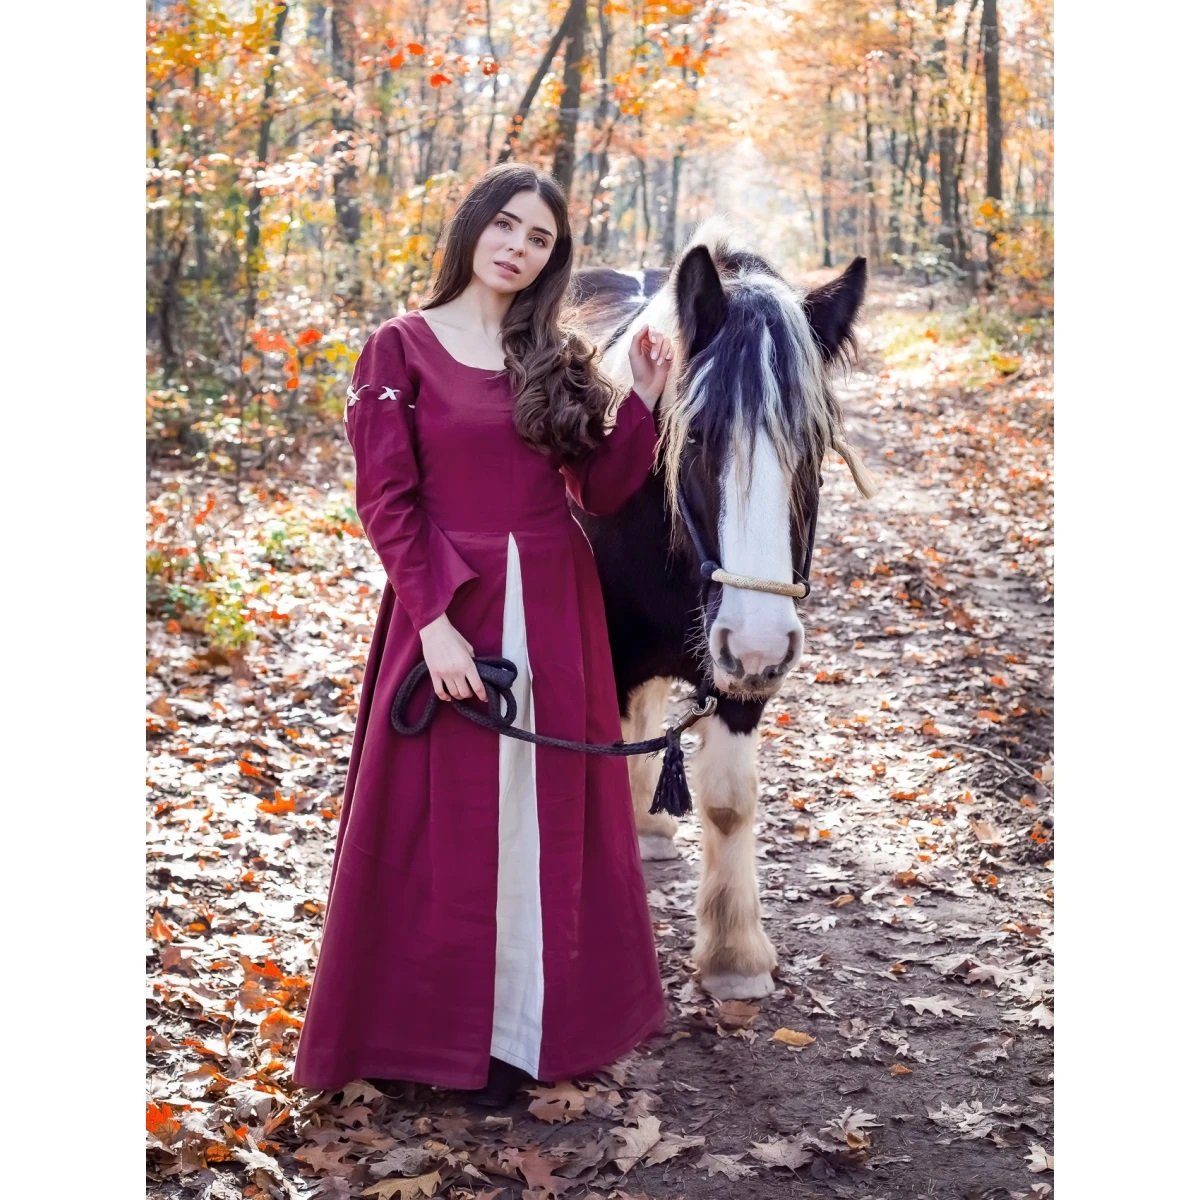 Leonardo Carbone Ritter-Kostüm Mittelalterliches Kleid Rot/Natur "Larina" XXXL